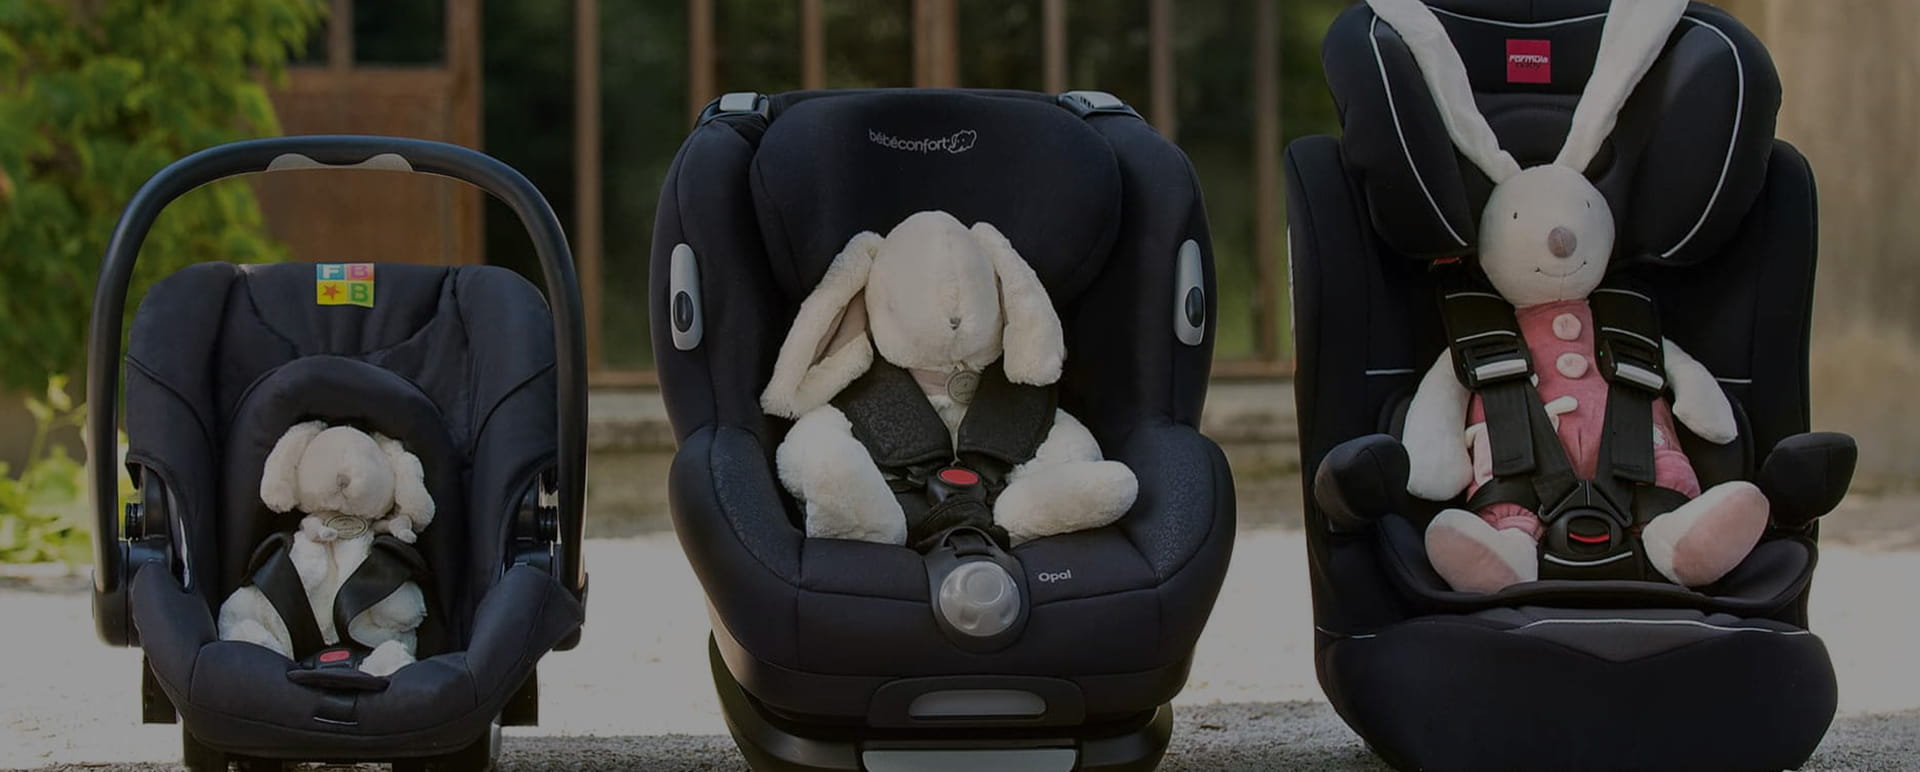 Siège auto, nacelle & coque bébé pour les trajets en voiture : adbb